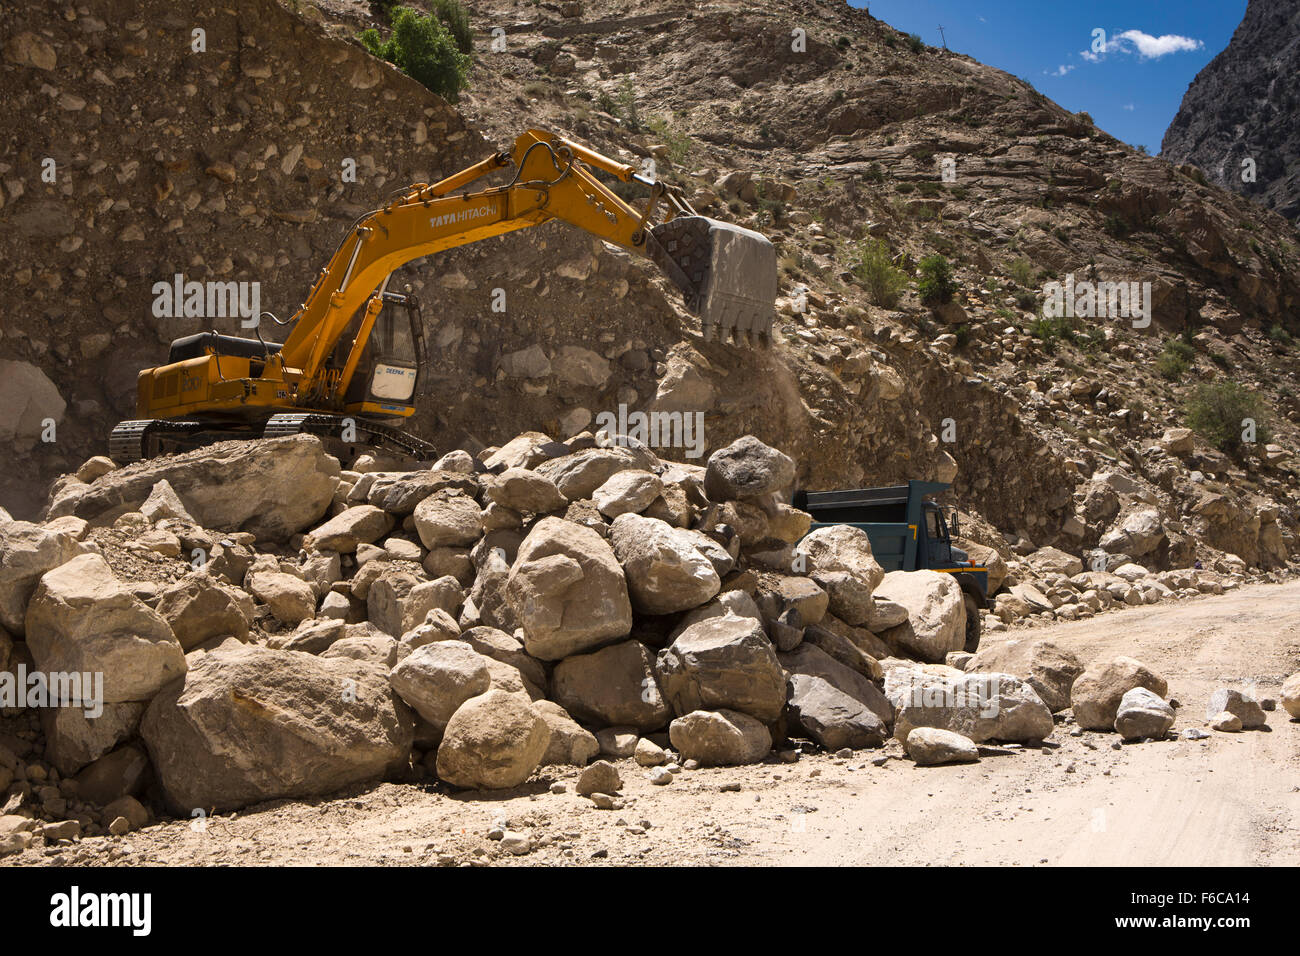 India, Himachal Pradesh, Kinnaur, Tashigang, Khab, Tata excavadoras Hitachi, el desmonte de grandes desprendimientos de autopista Hindustan-Tibet Foto de stock